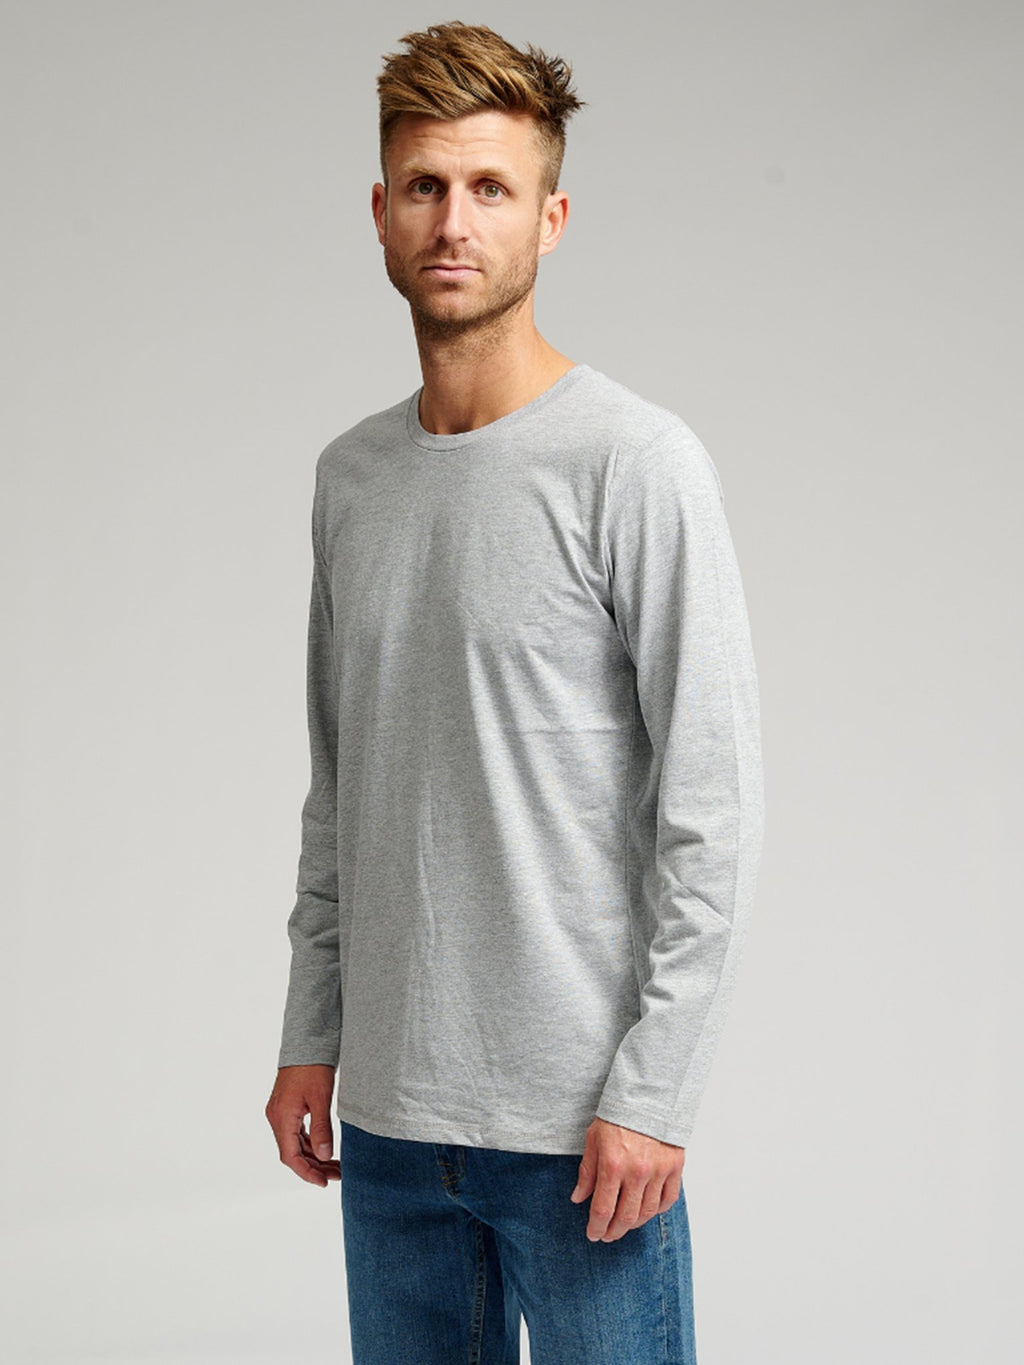 Basic Marškinėliai ilgomis rankovėmis-pilka